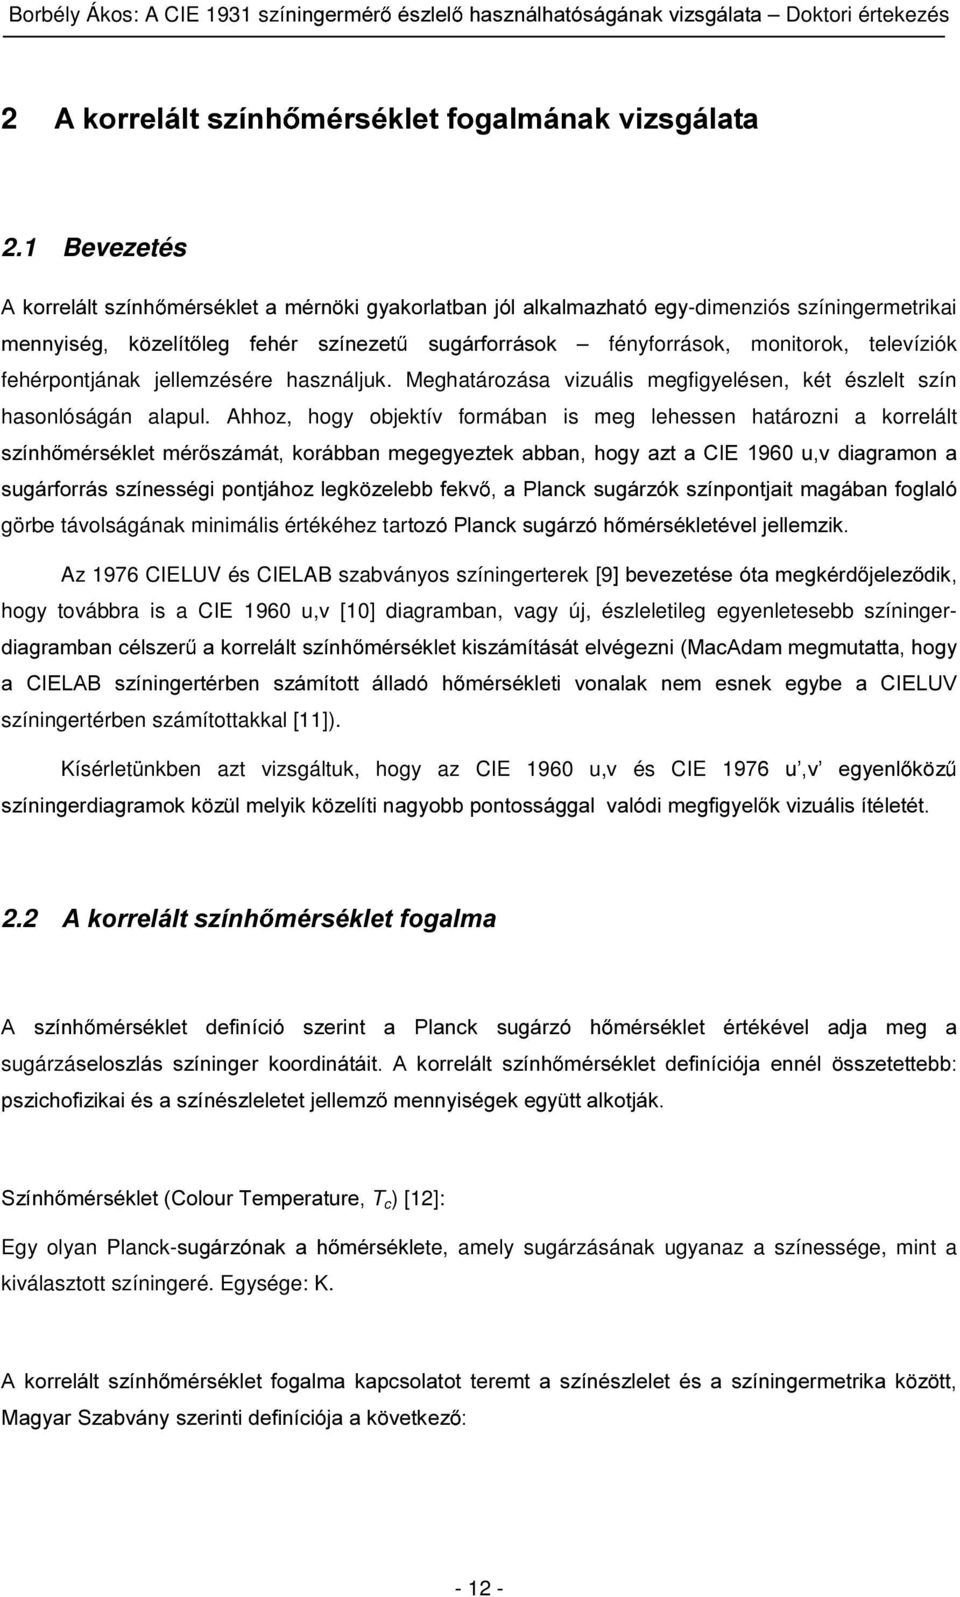 Borbély Ákos. Doktori (PhD) értekezés - PDF Ingyenes letöltés